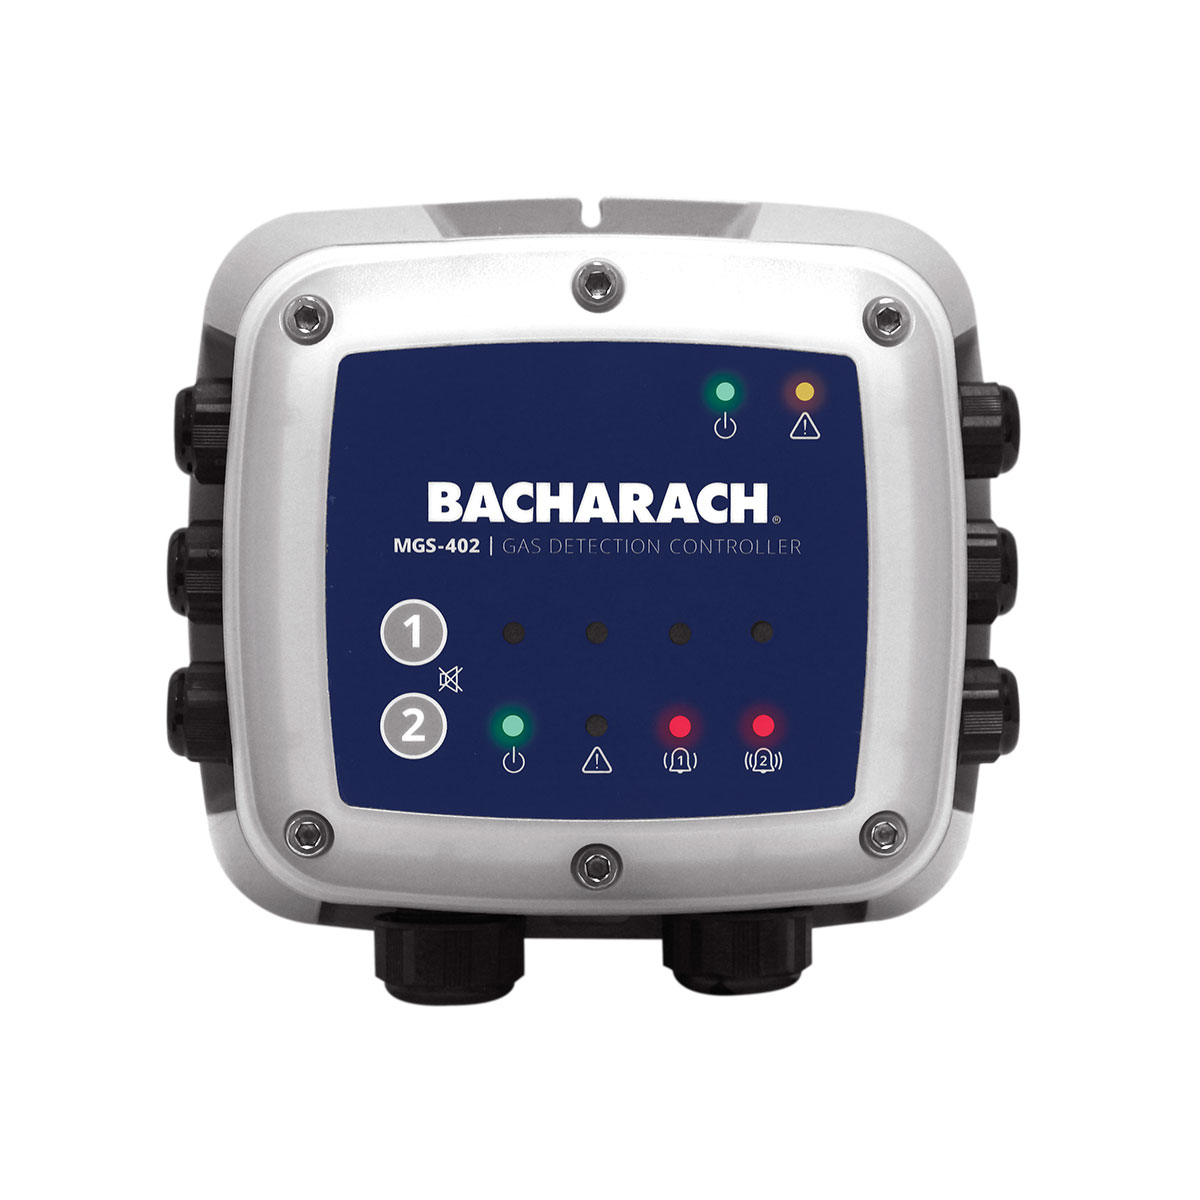    Bacharach Controler detector de gaz MGS-402